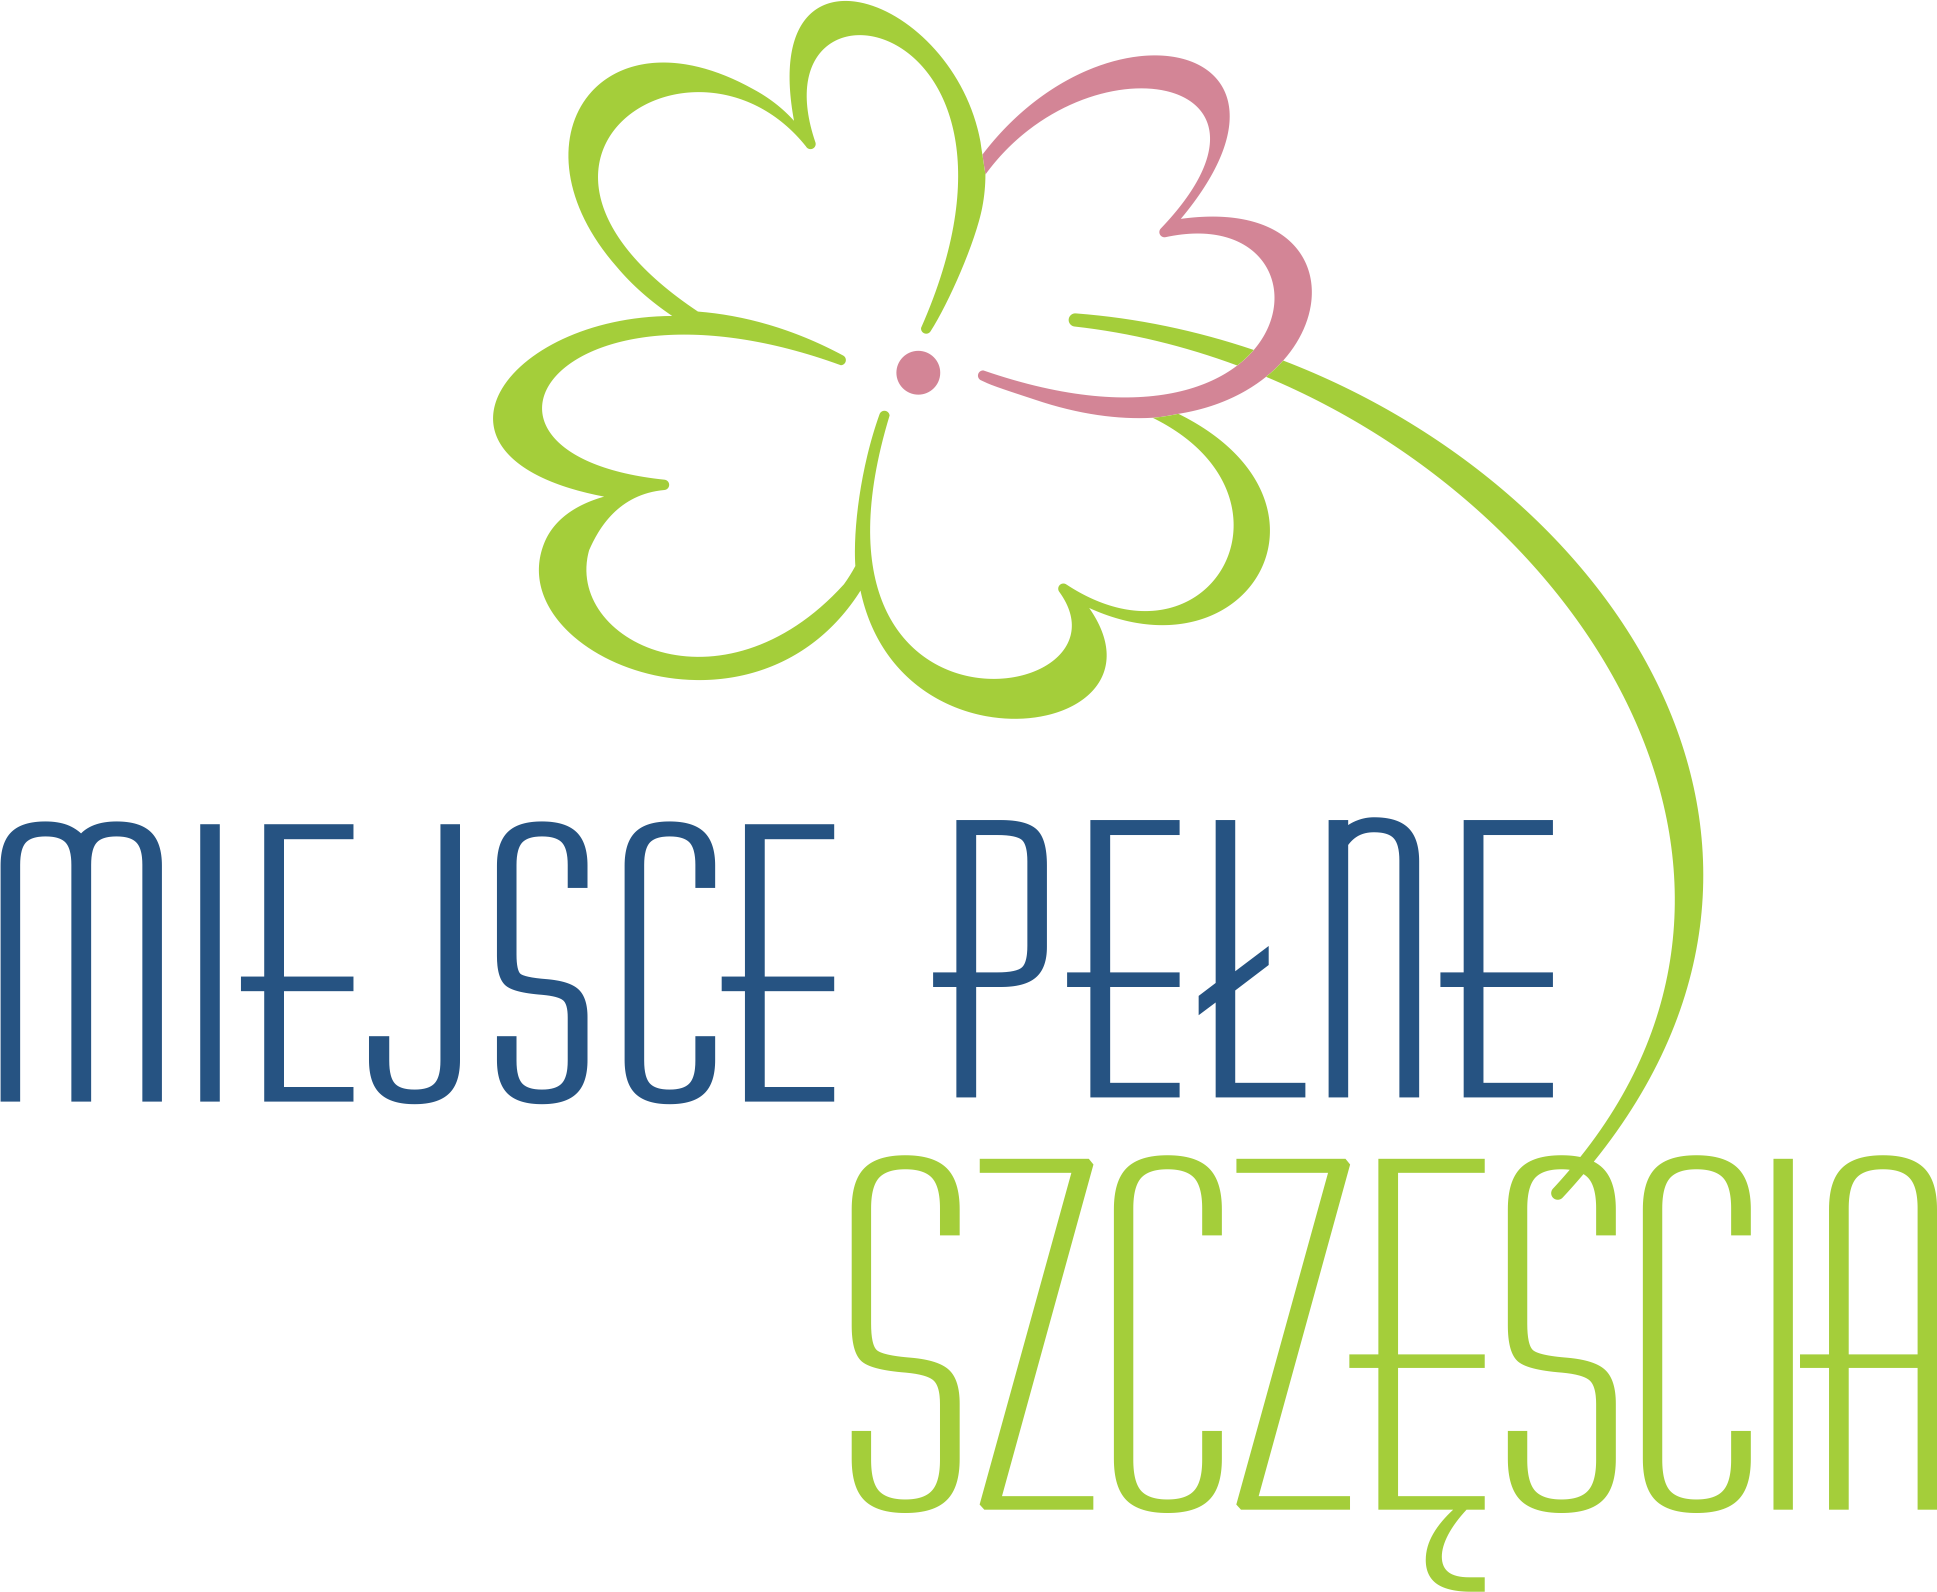 miejsce-pelne-szczescia_logo kolor